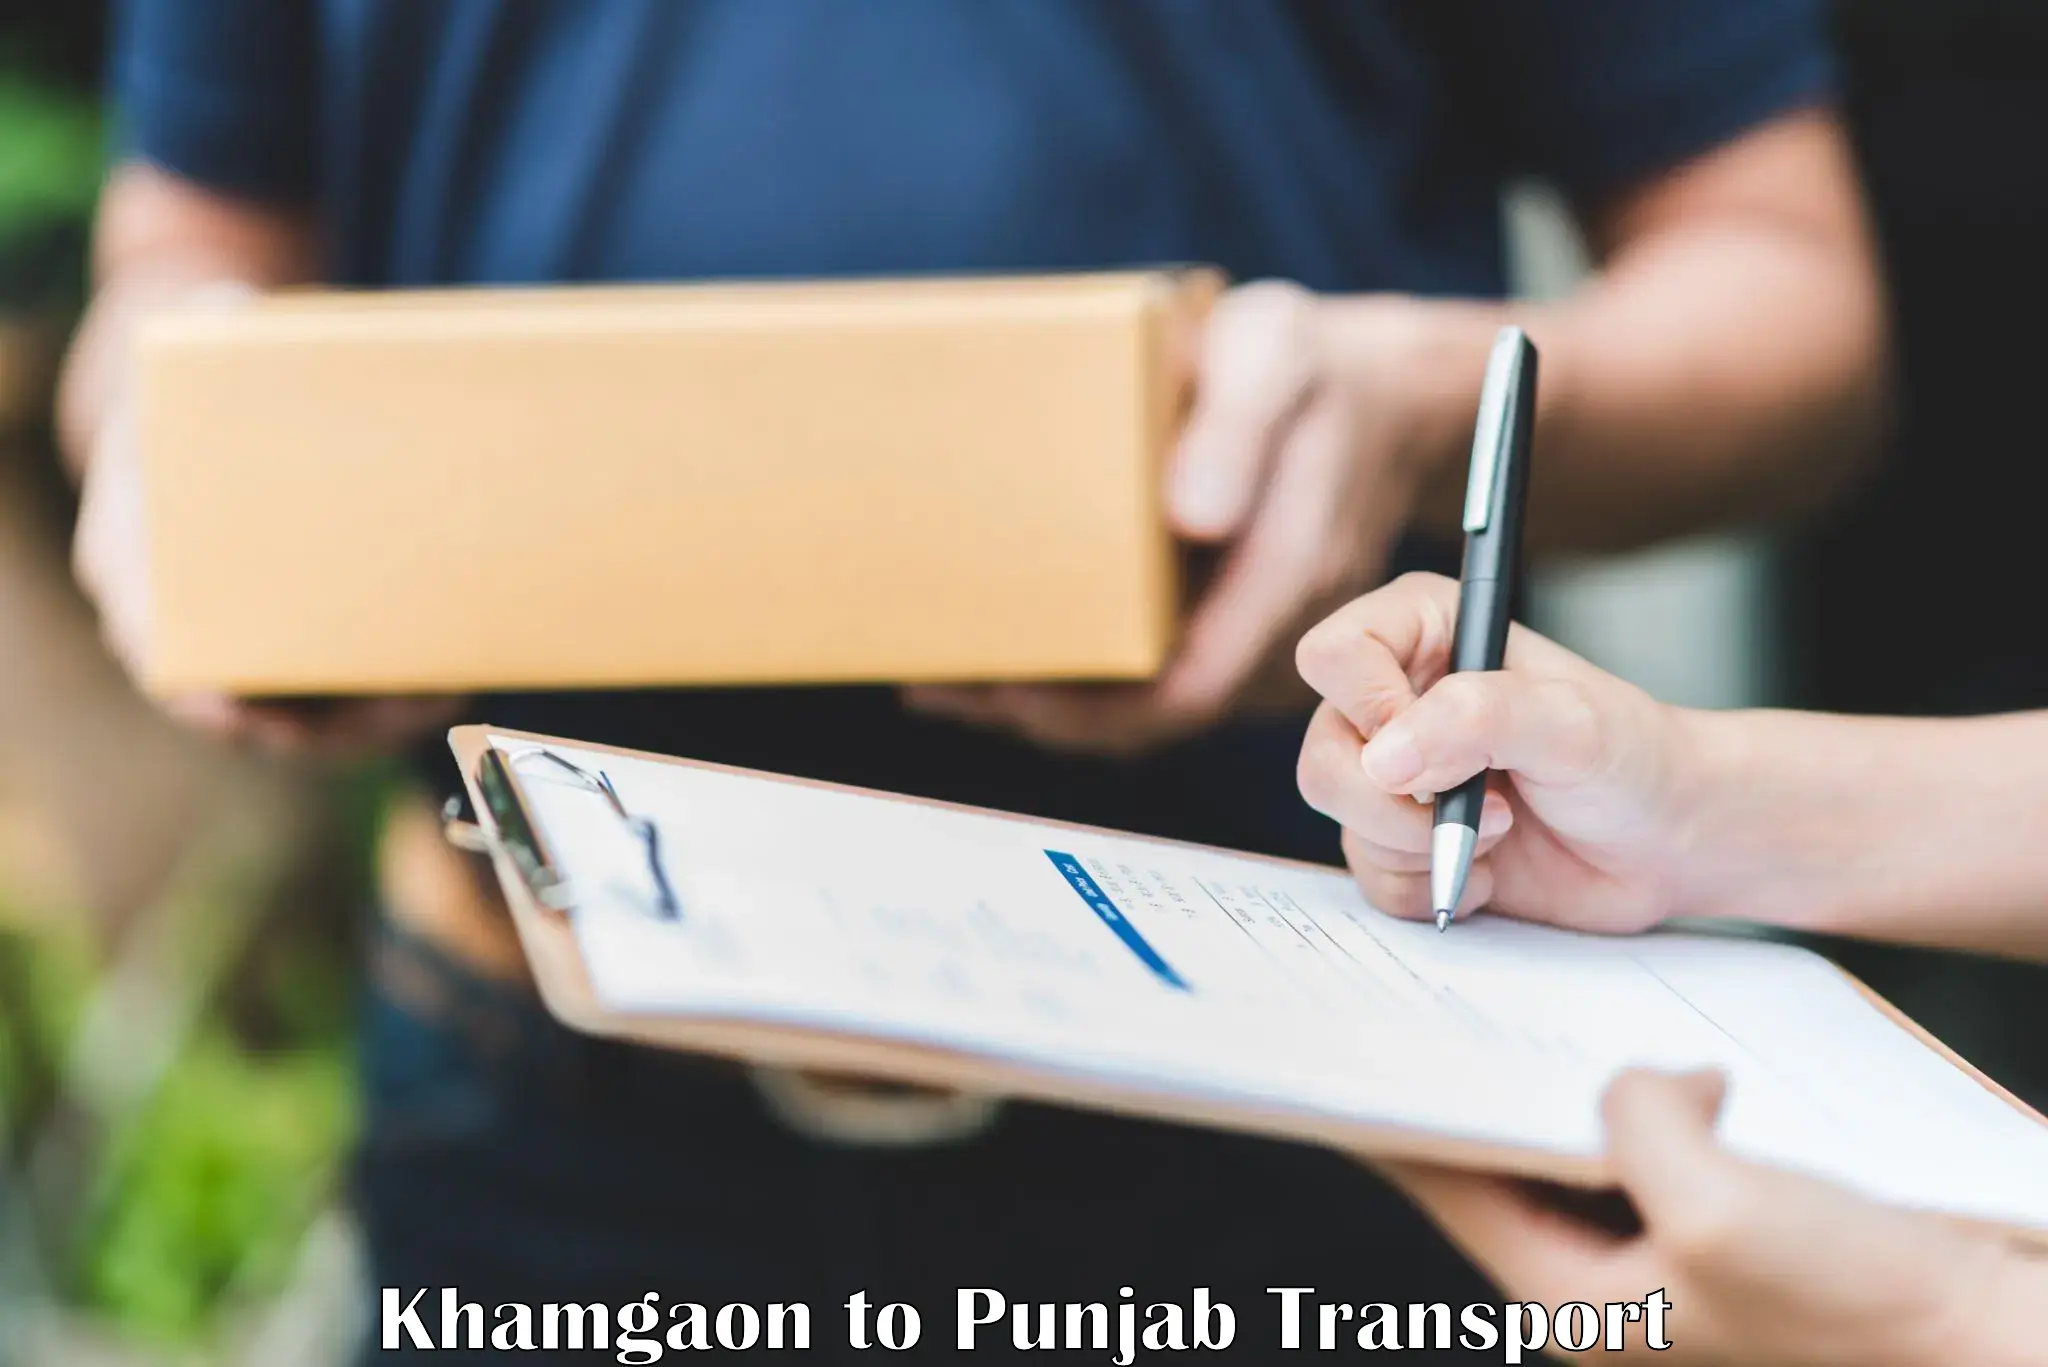 Online transport booking Khamgaon to Talwara